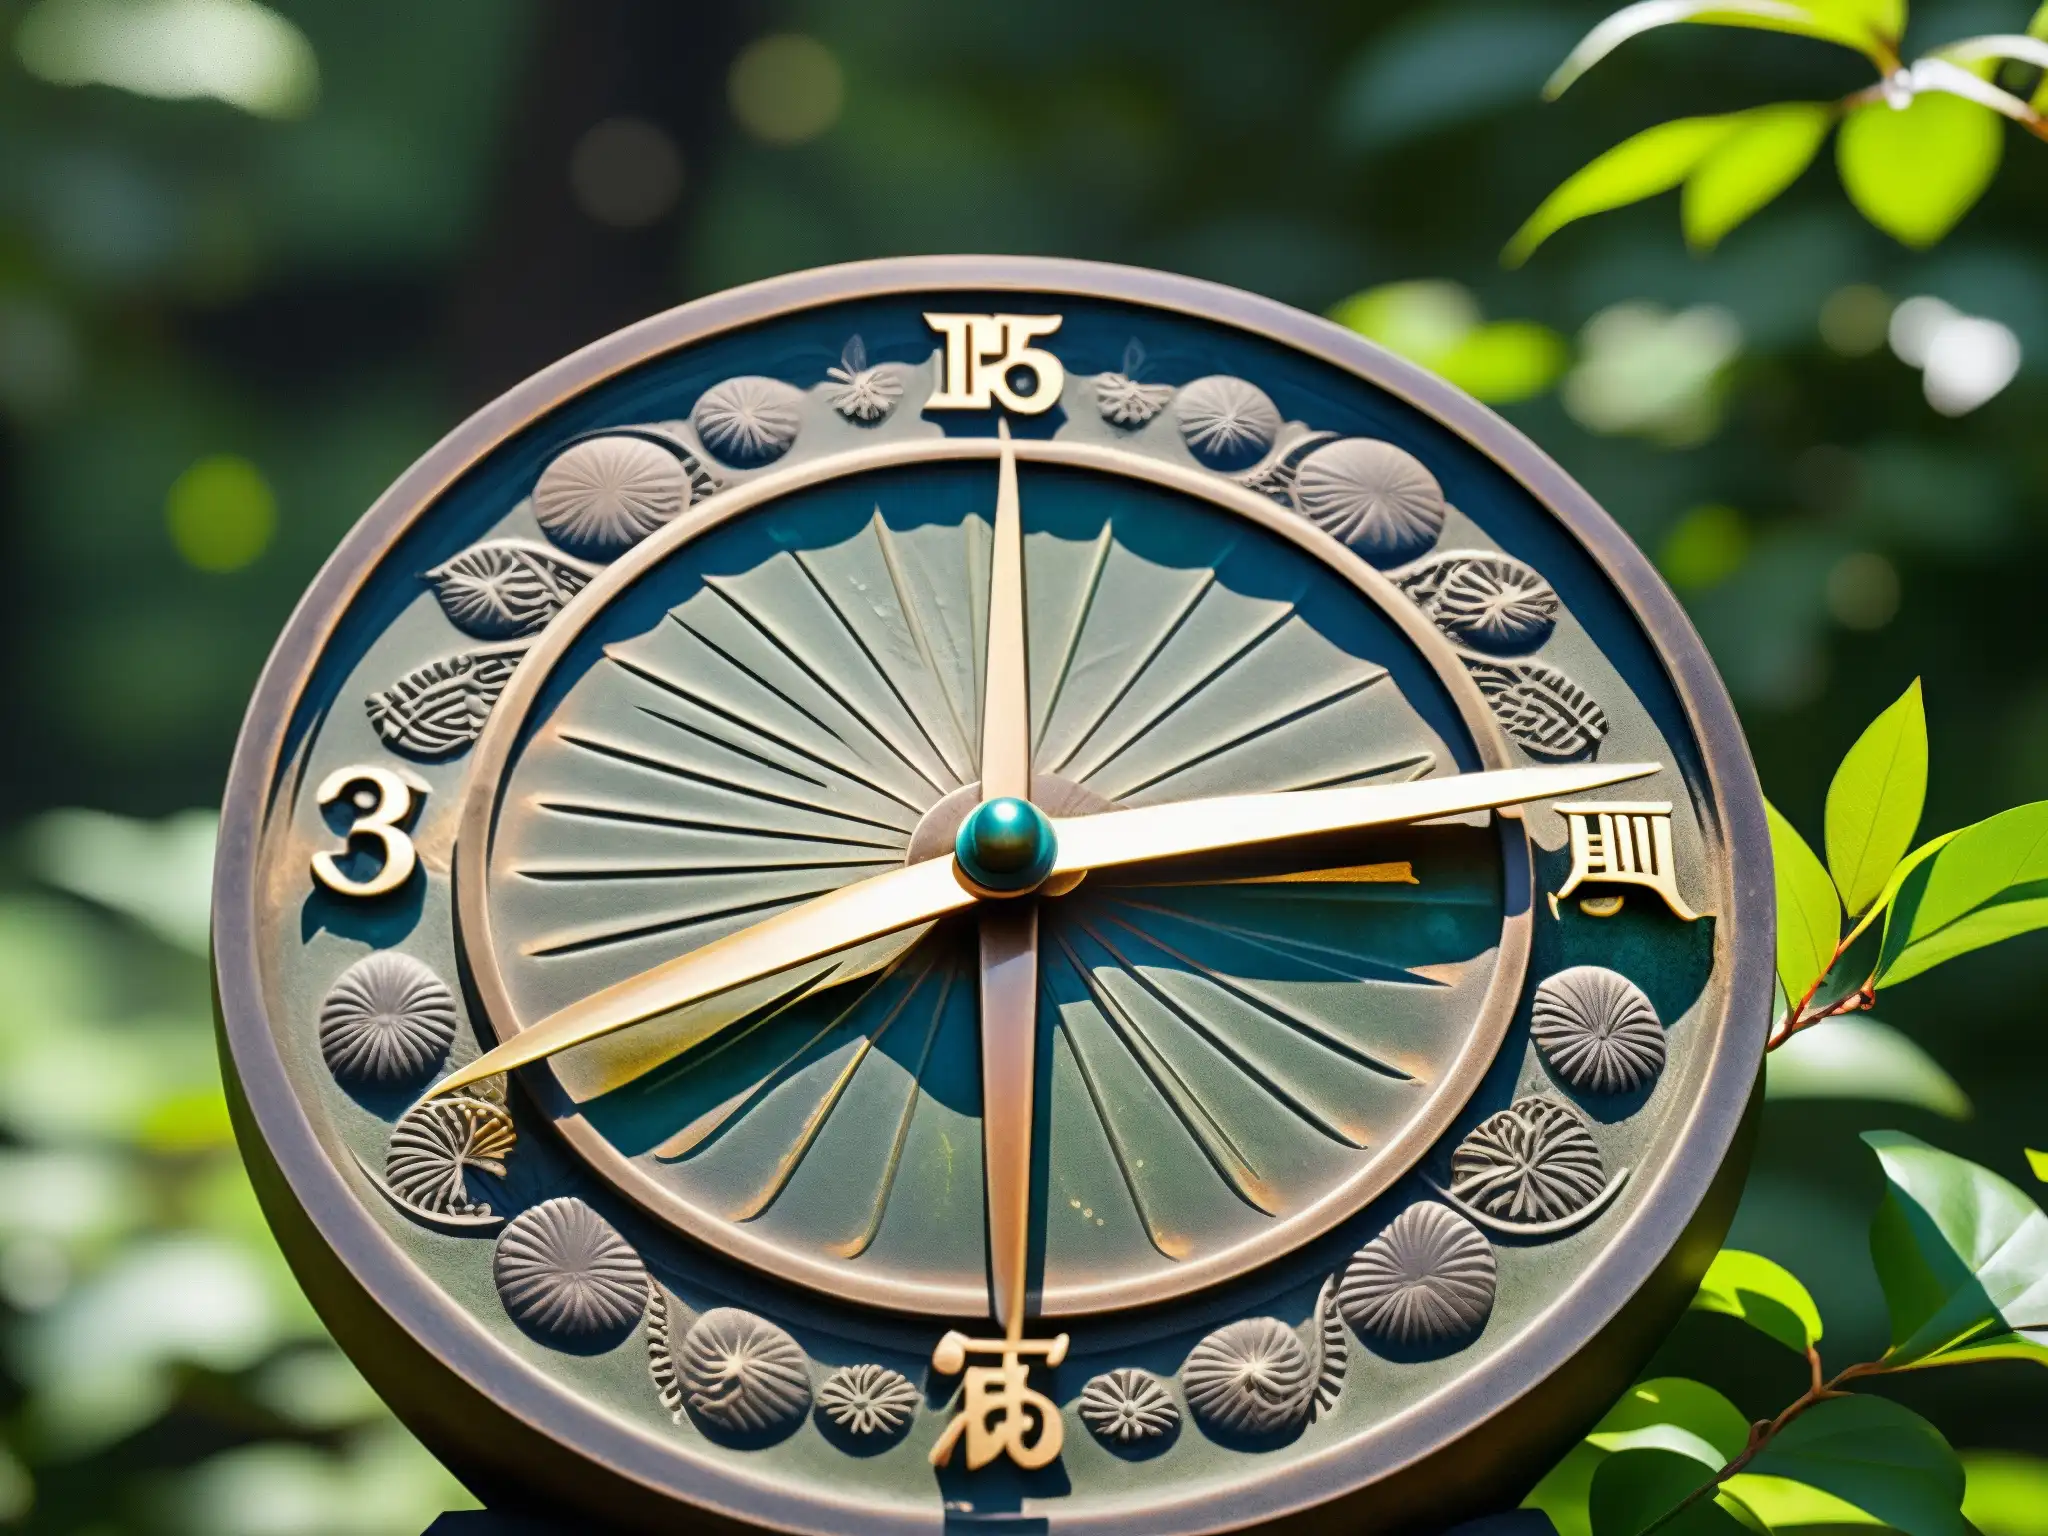 Un antiguo reloj solar japonés, El Reloj Maldito de Myojin, con intrincadas grabados, en un entorno místico y enigmático